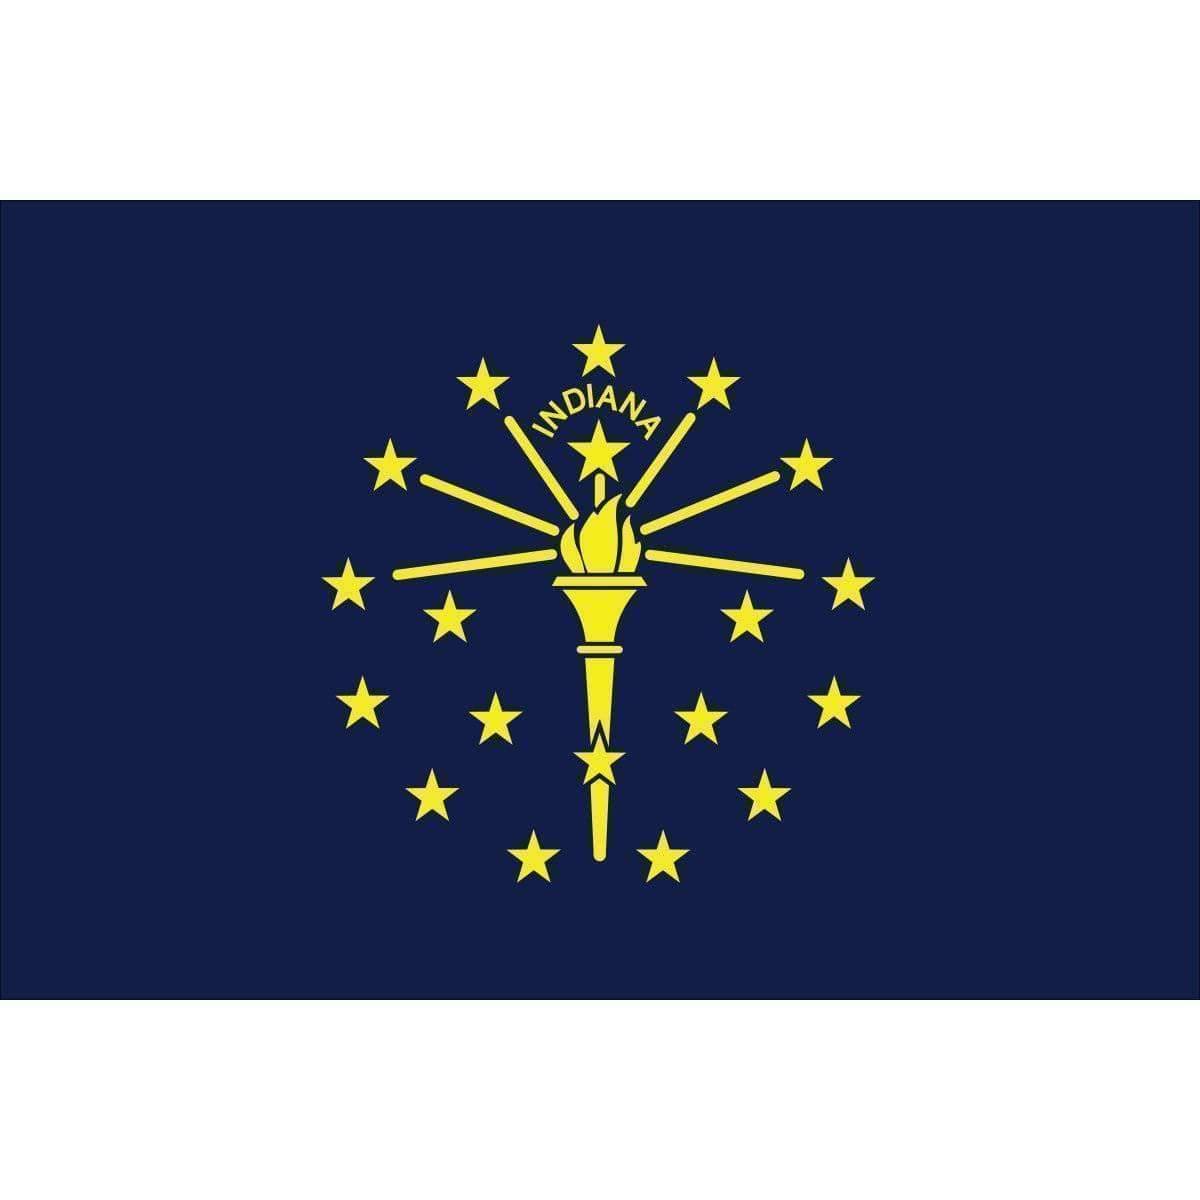 Indiana 2 x 3 Nylon Dyed Flag (USA Made).